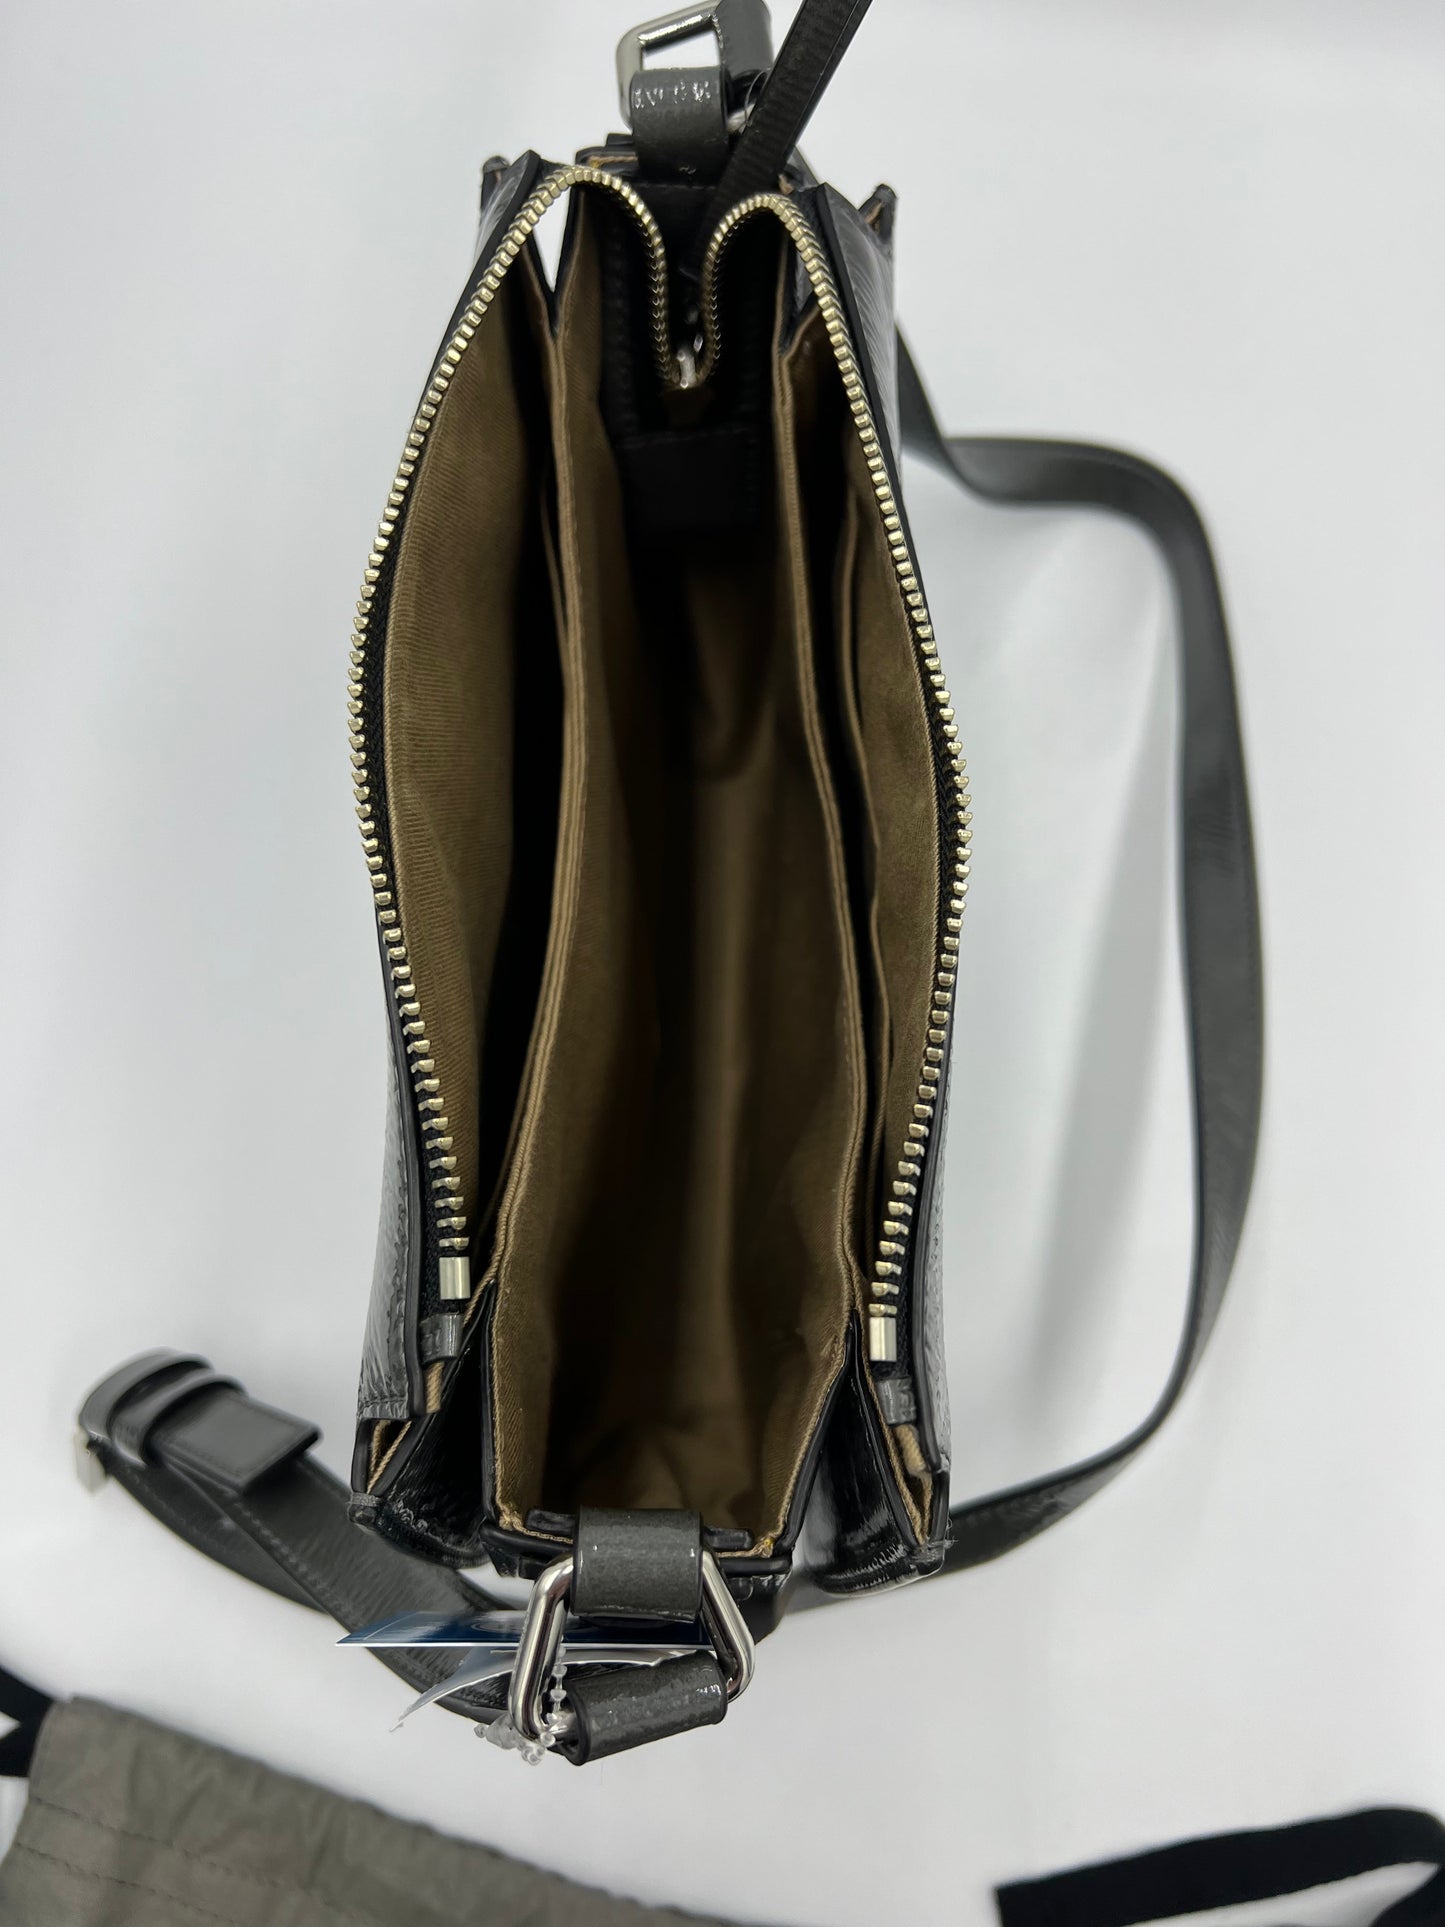 Handbag Designer By All Saints  Size: Medium